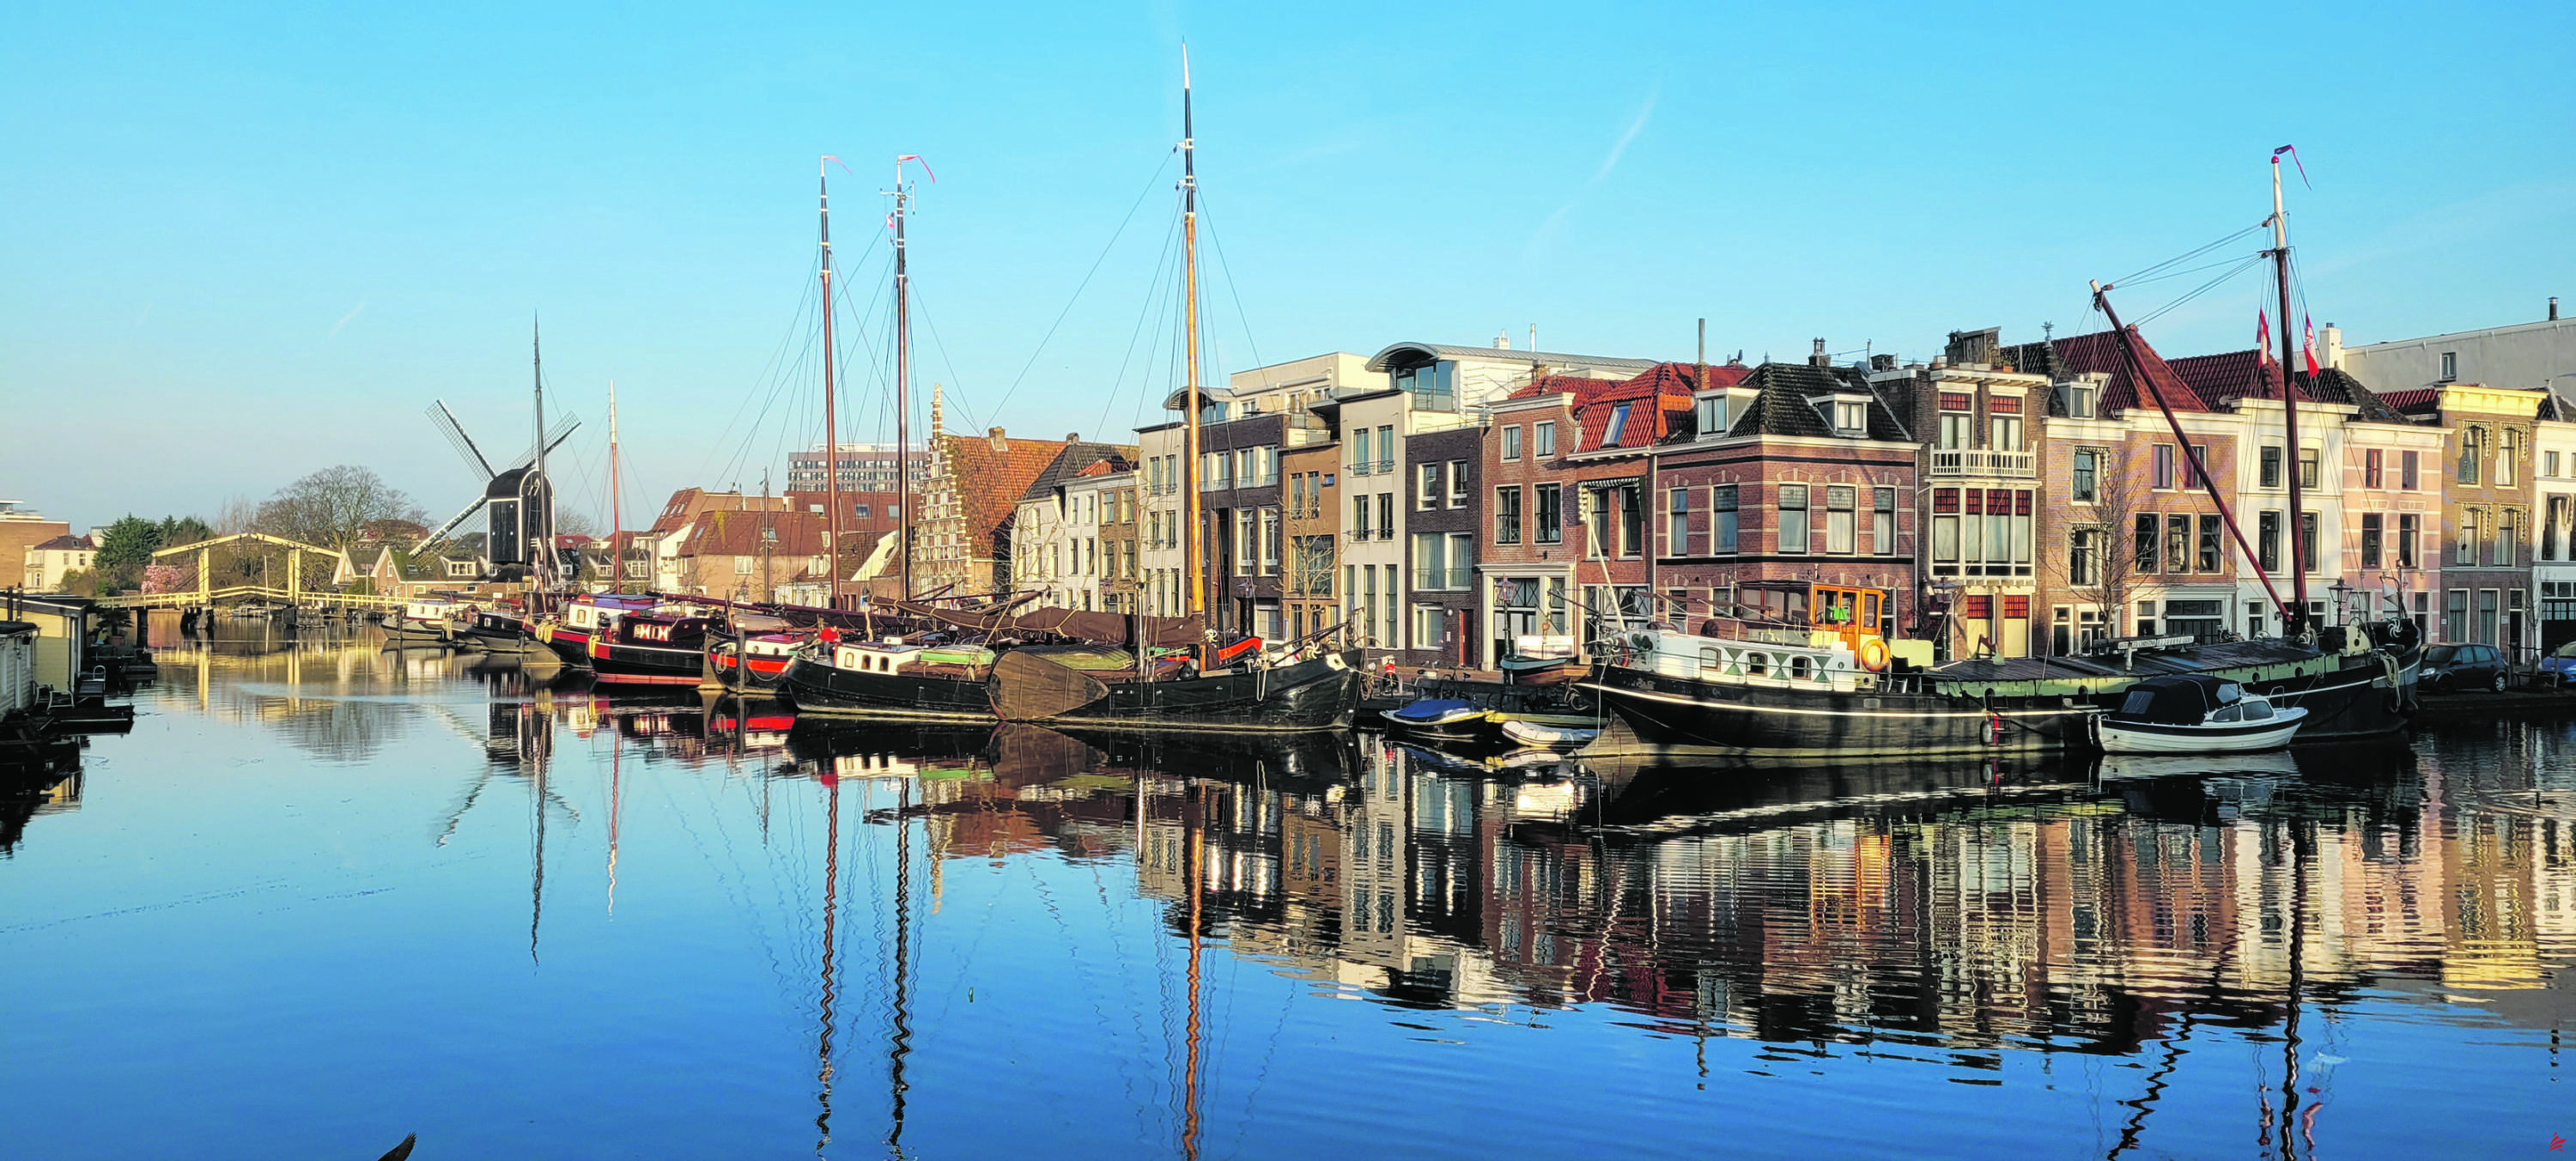 ¡Olvídate de Ámsterdam! En la tierra de los tulipanes, Leiden es el destino estrella de la primavera